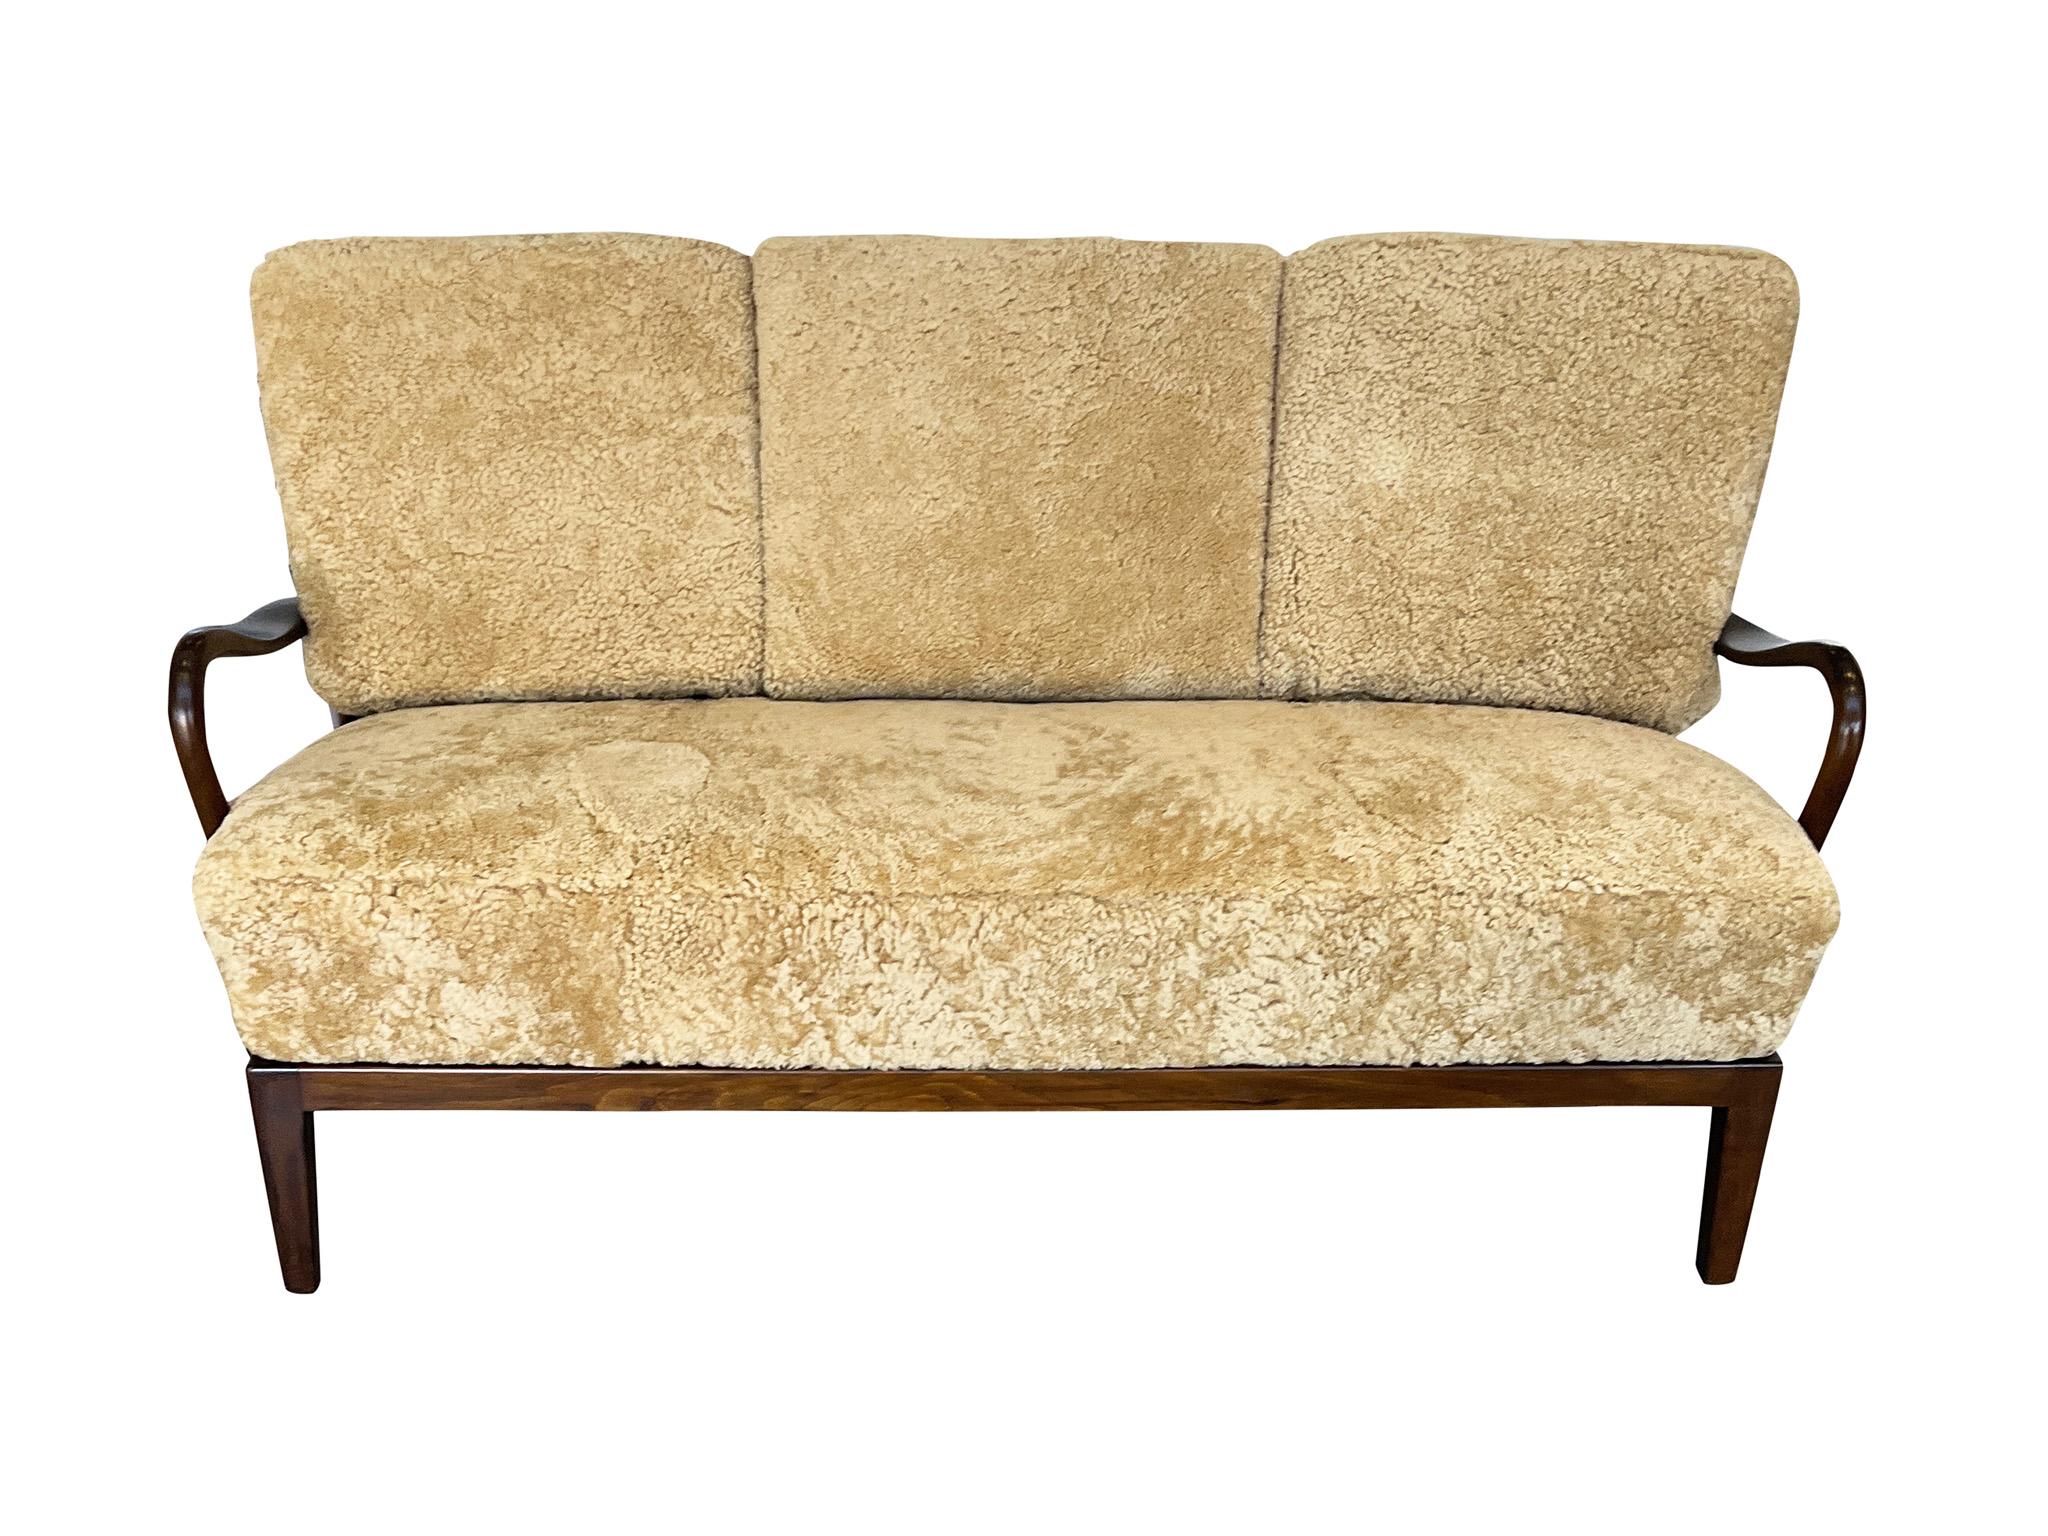 Charmantes dänisches Sofa aus den 1940er Jahren, entworfen von Alfred Christensen für Slagelse Mobelvaerk. Das Gestell zeichnet sich durch die für Christensen charakteristischen geschwungenen Paddelarme aus, die durch die Rückenlehne mit den